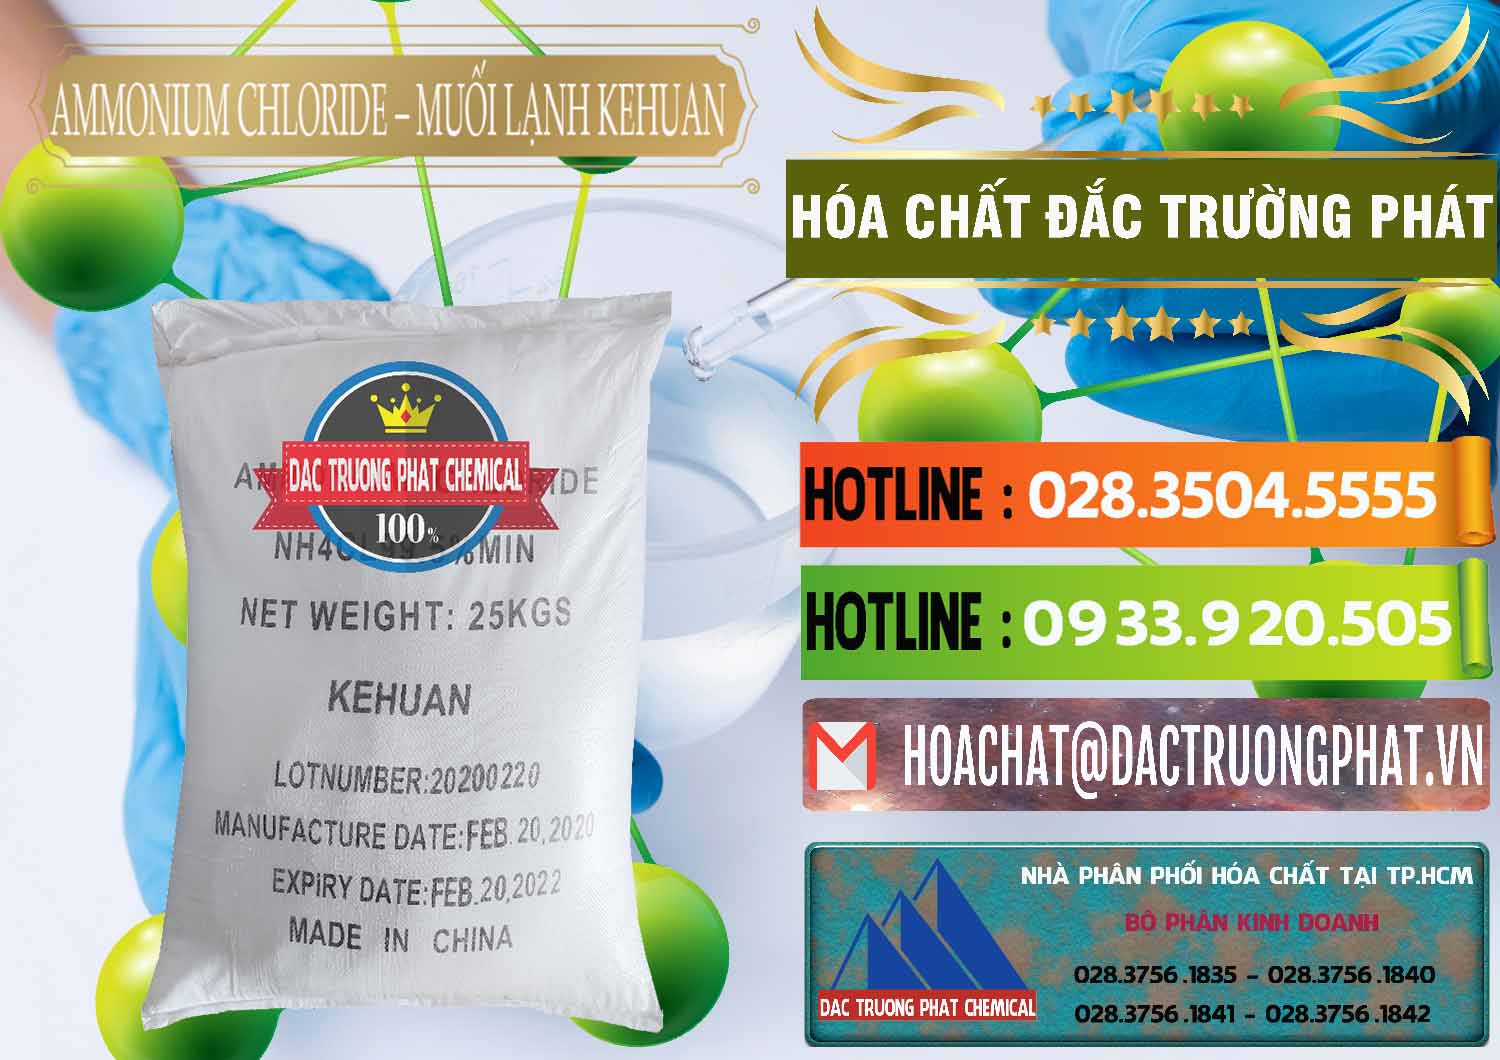 Cung cấp _ bán Ammonium Chloride – NH4CL Muối Lạnh Kehuan Trung Quốc China - 0022 - Đơn vị cung cấp & phân phối hóa chất tại TP.HCM - cungcaphoachat.com.vn